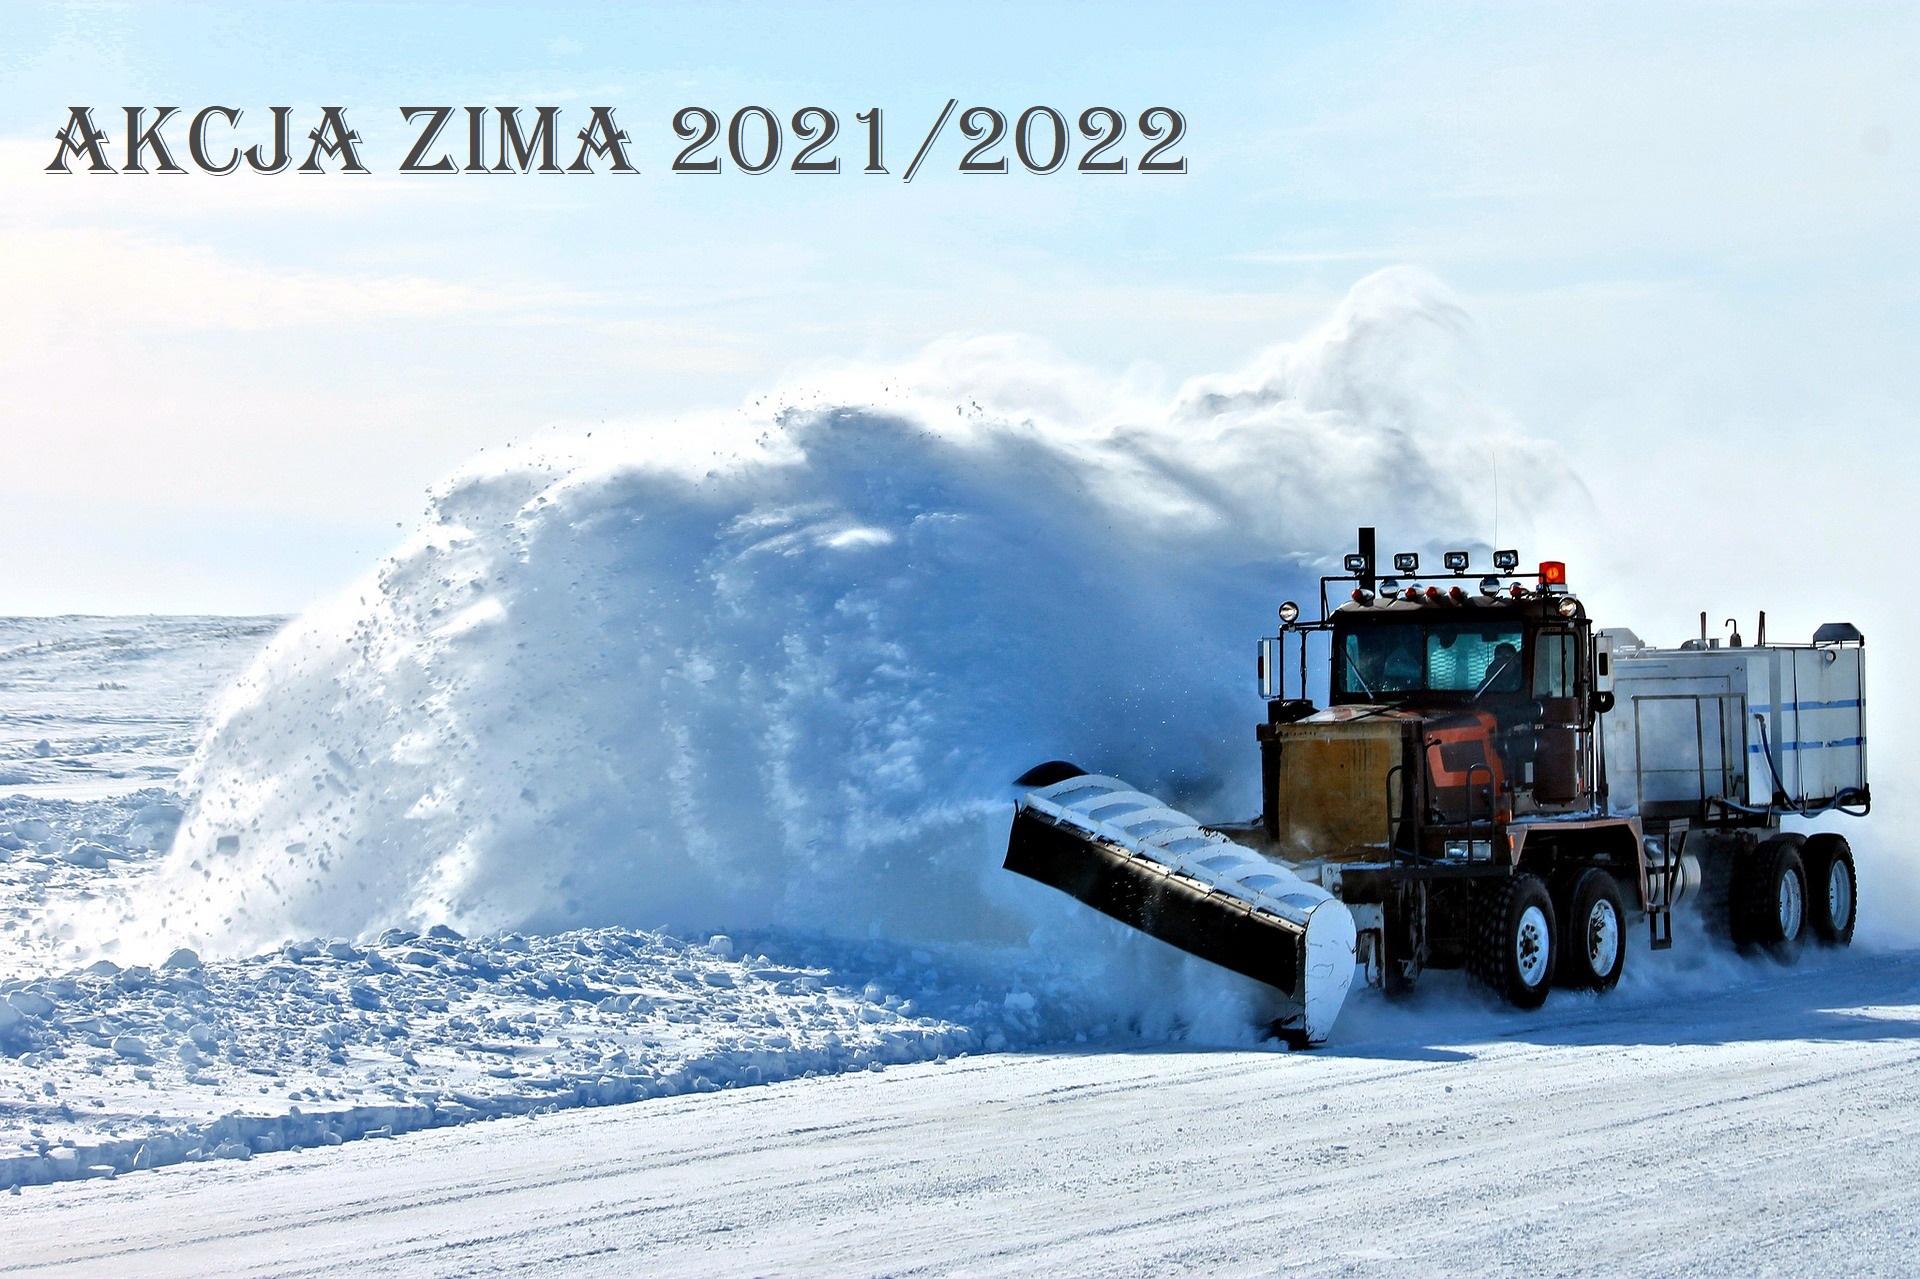 samochód ciężarowy z pługiem odśnieża drogę zasypaną śniegiem, słoneczny dzień, na górze napis Akcja Zima 2021/2022